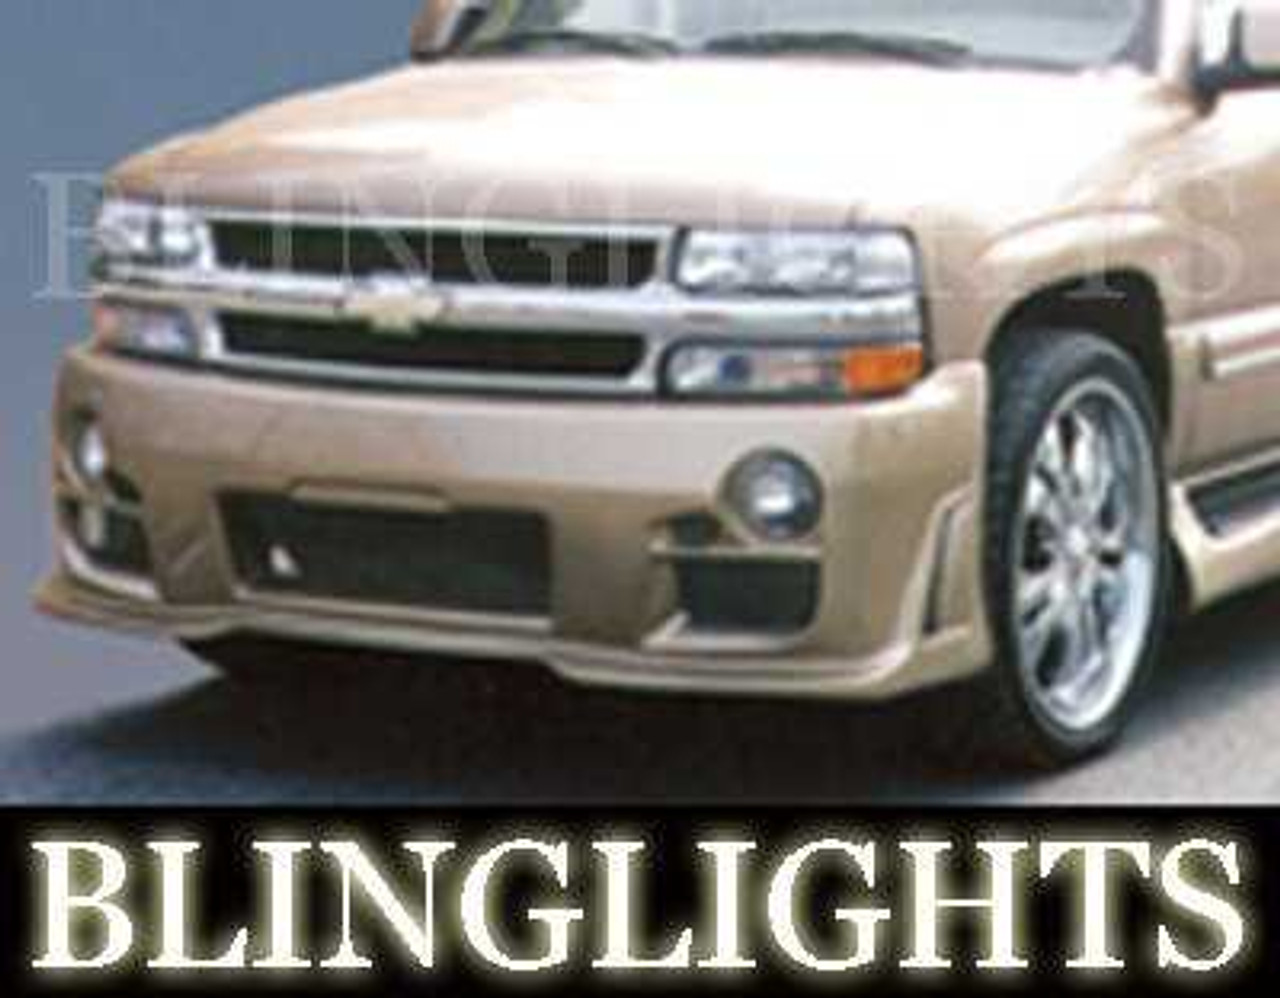 BlingLights Brand Fog Lights for 2000-2006 Chevrolet Suburban with Erebuni Body Kit